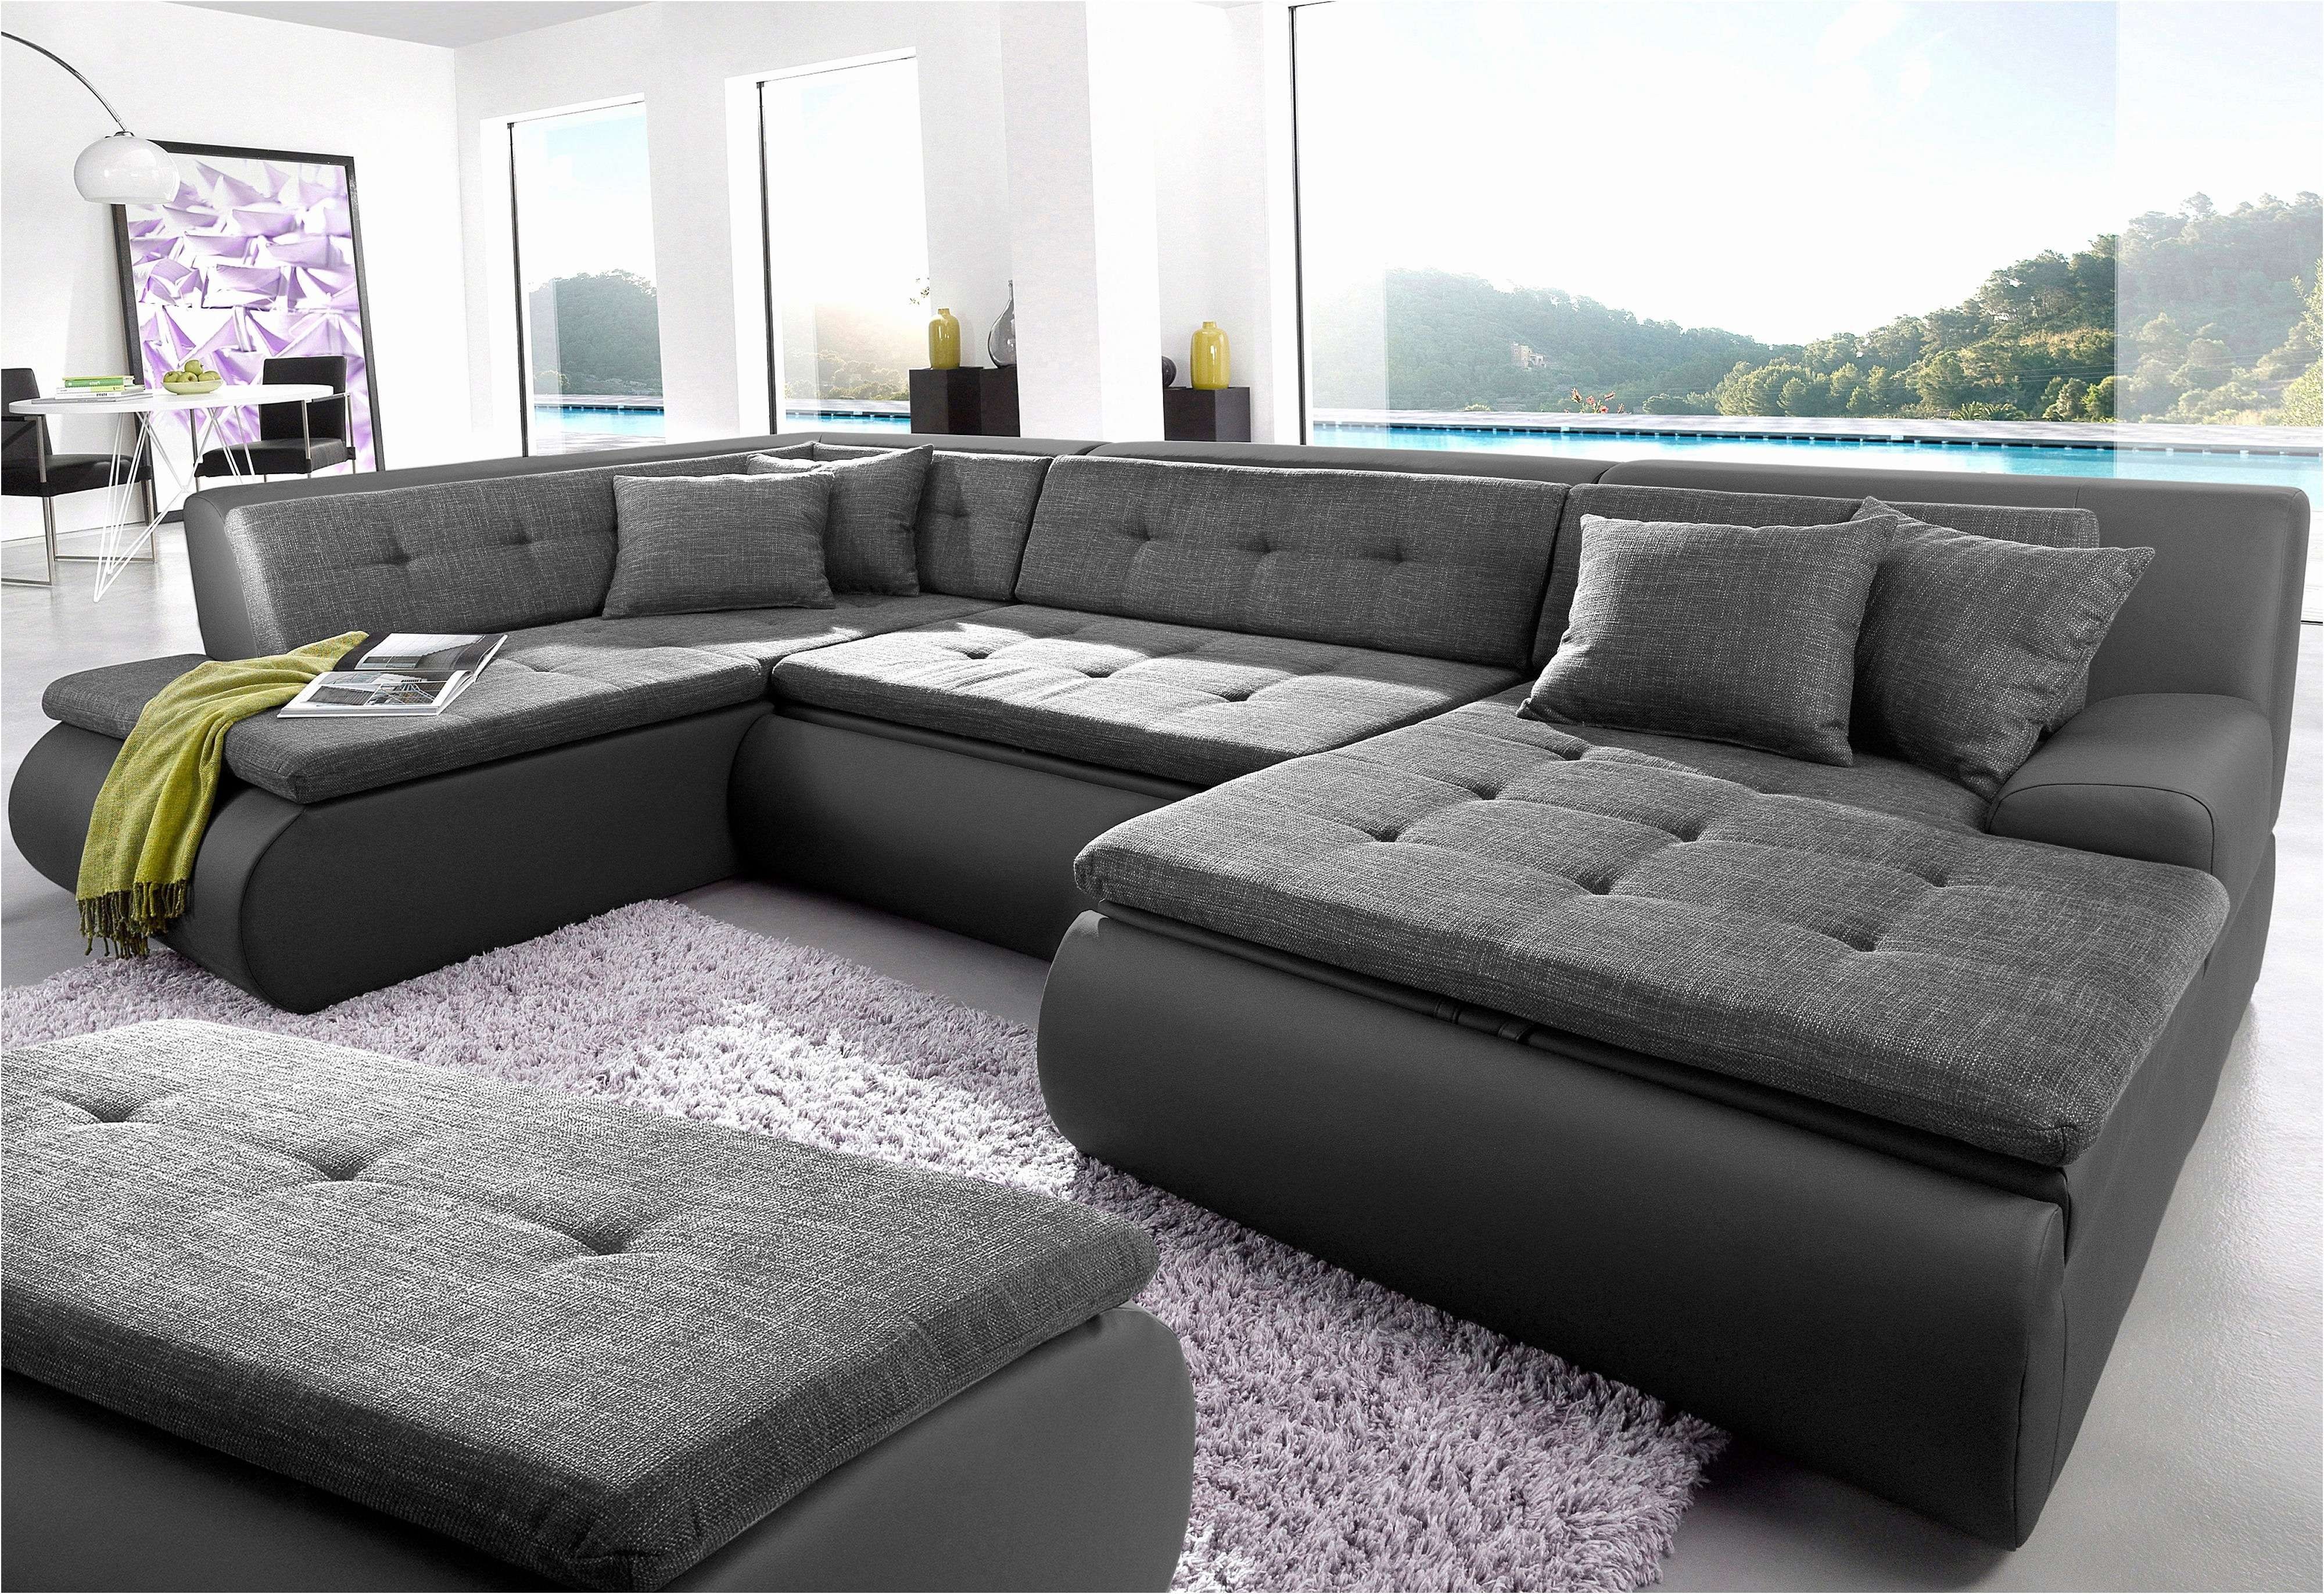 Угловые диваны хорошего качества. Модульный диван Мегапол. Большие диваны для гостиной. Модульные диваны для гостиной. Диван модульный широкий.